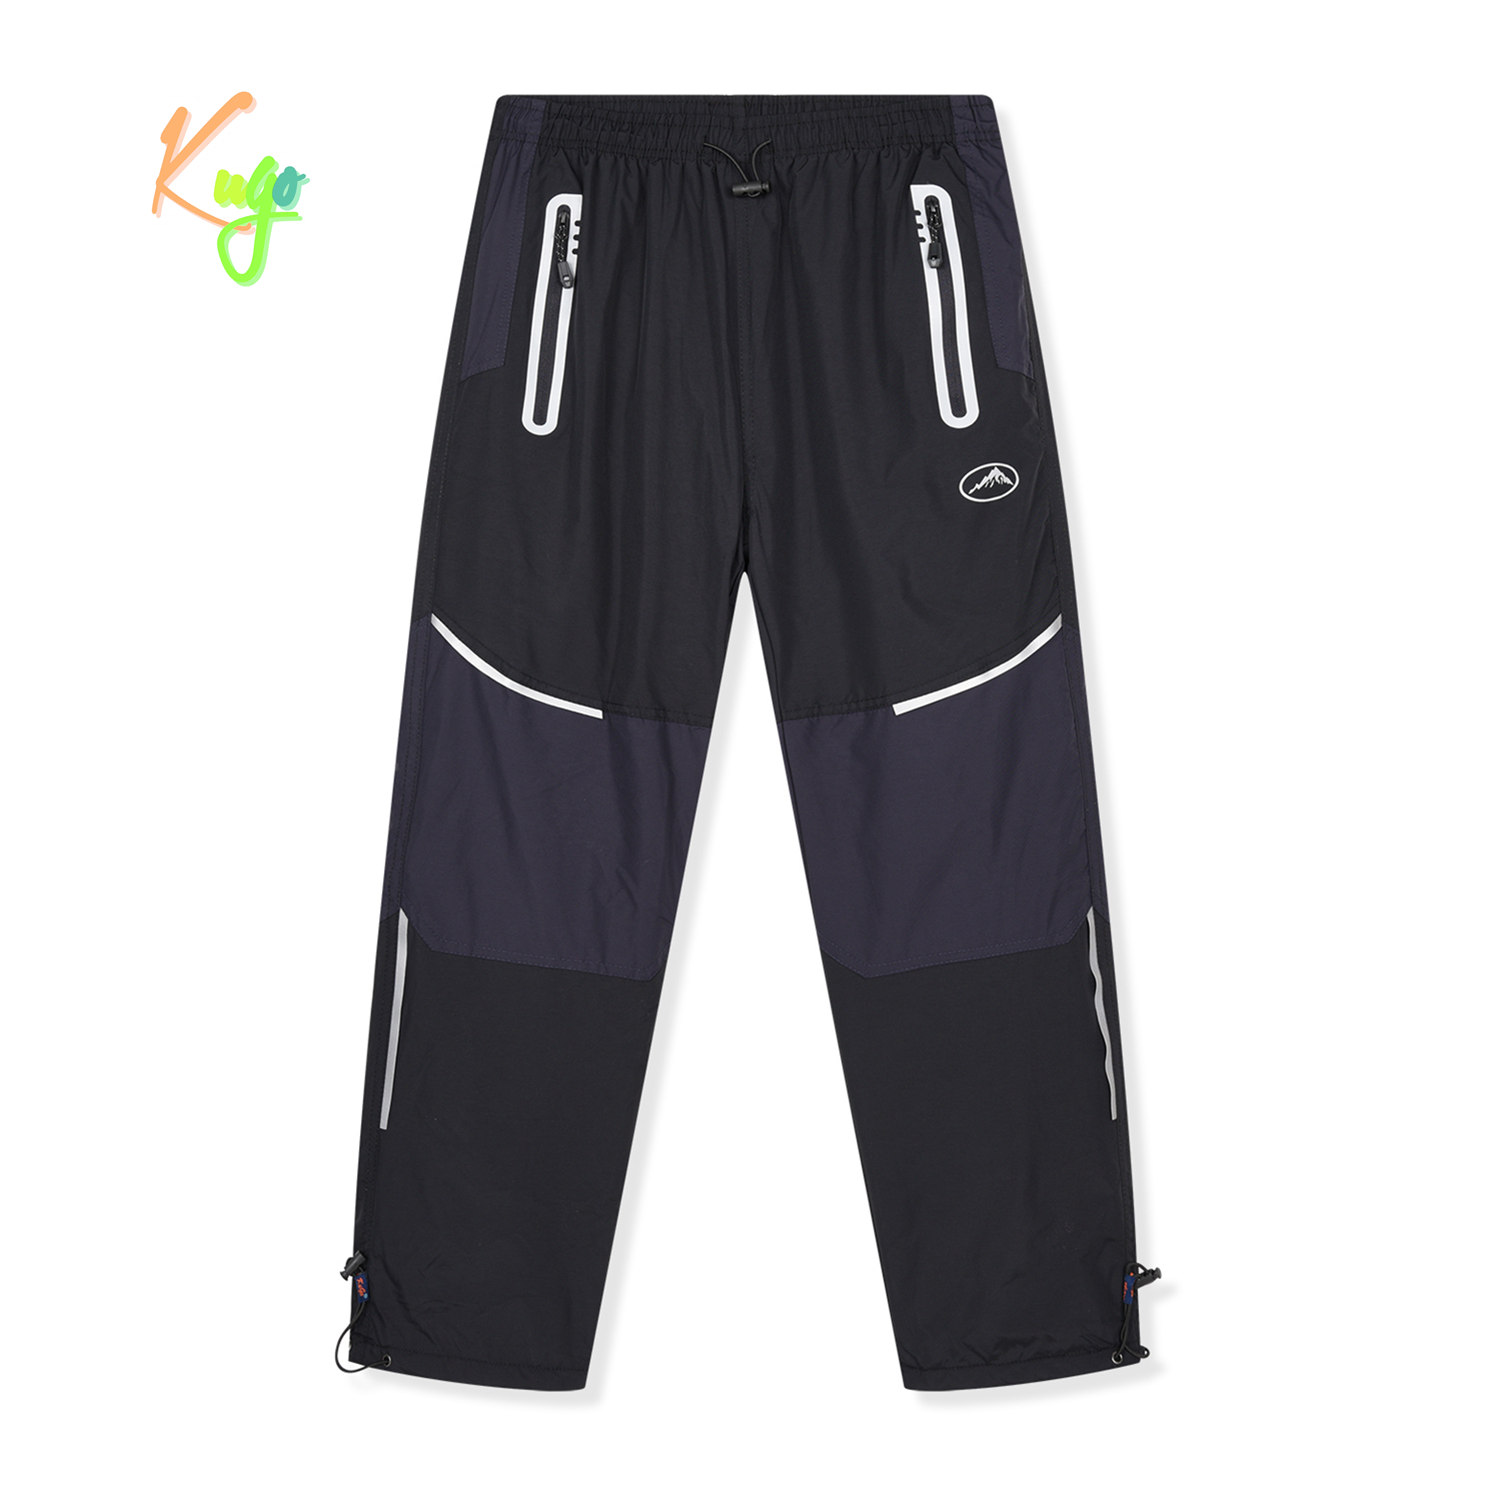 Chlapecké šusťákové kalhoty, zateplené - KUGO DK8238, černá / černé zipy Barva: Černá, Velikost: 152